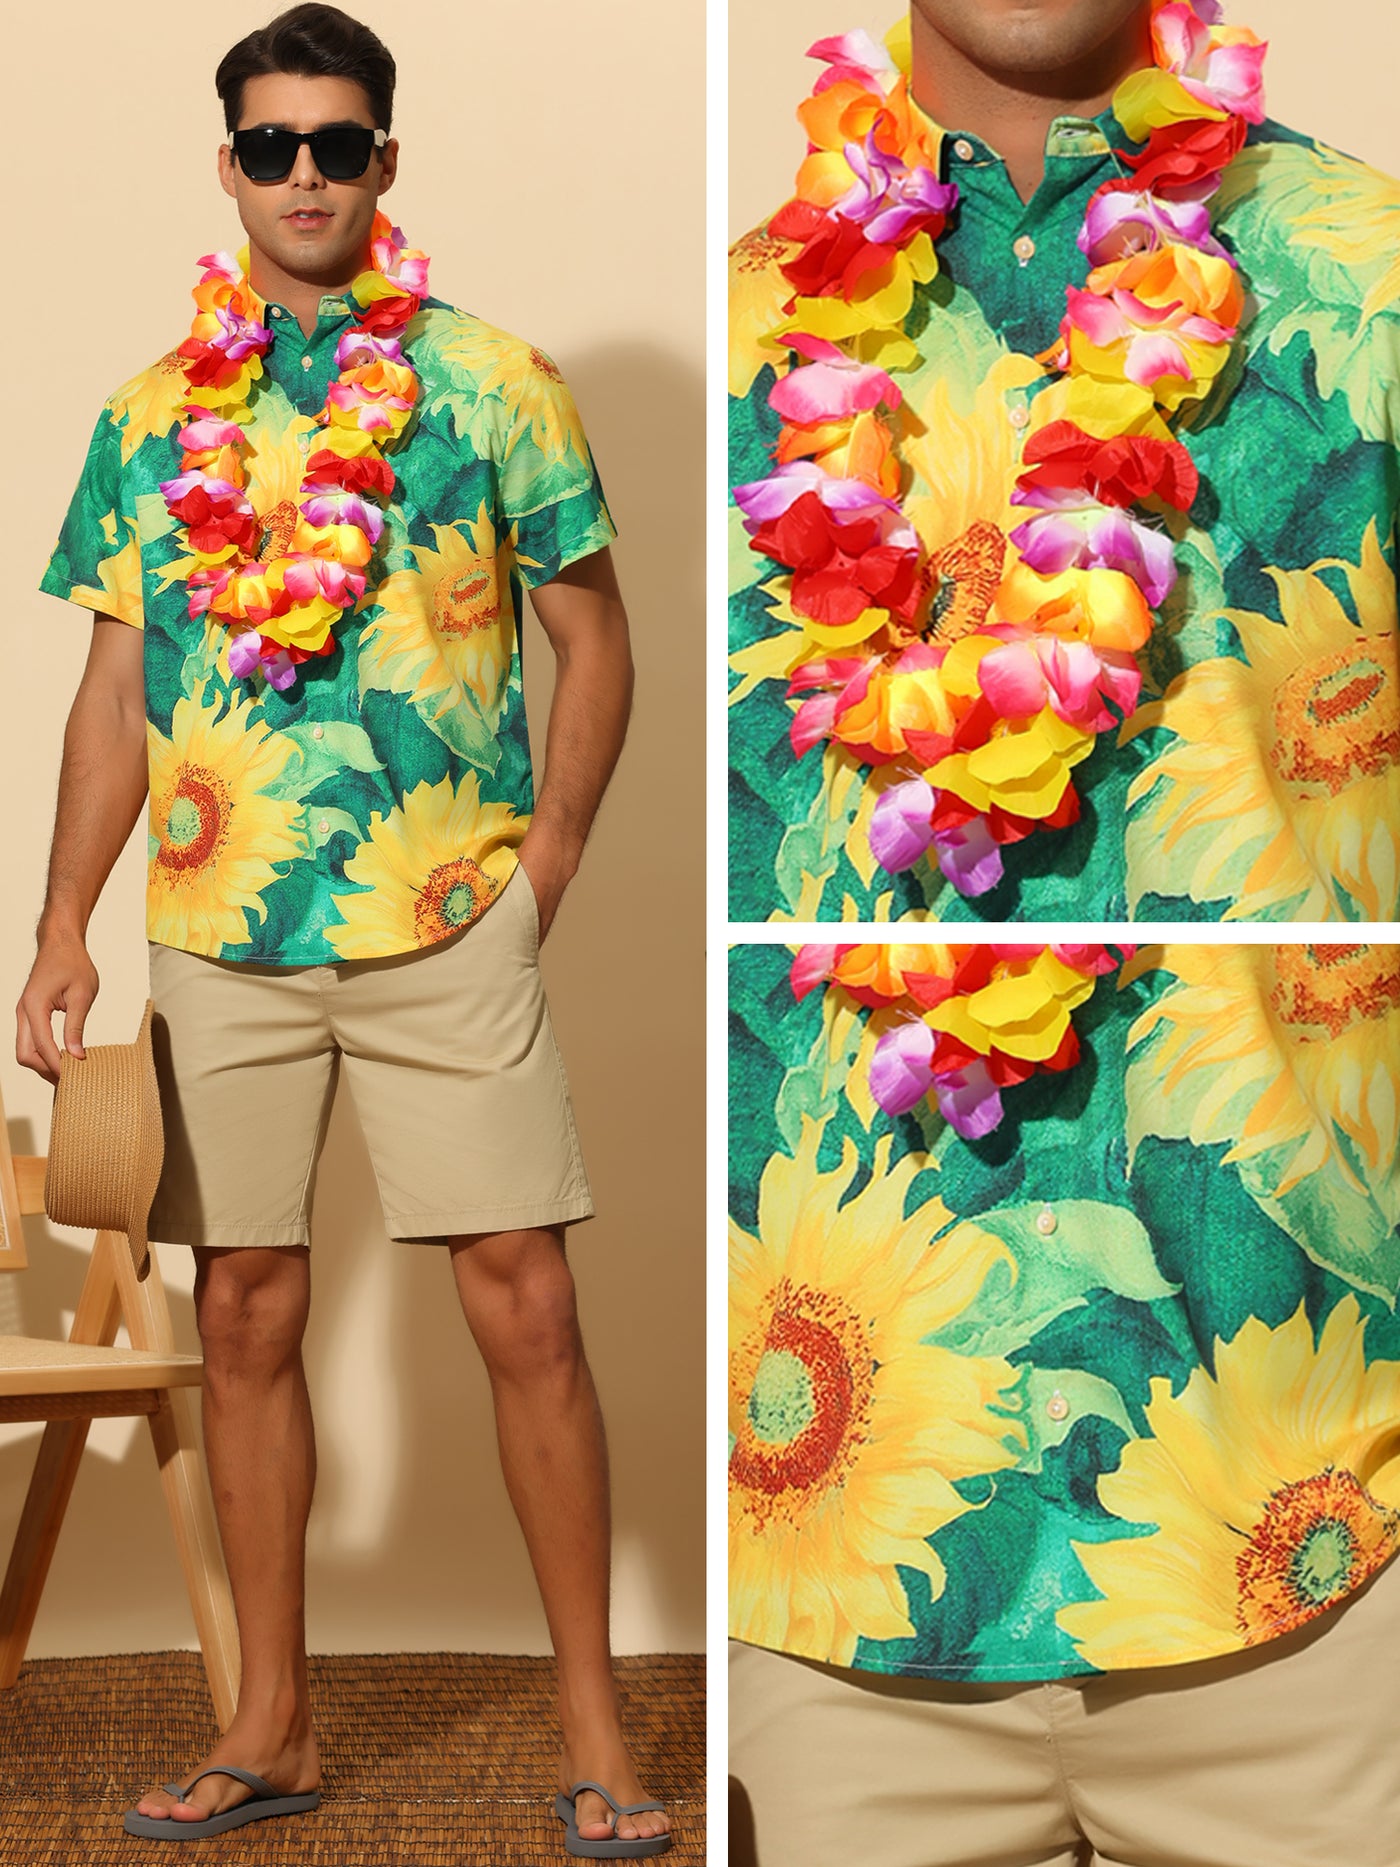 Bublédon Sunflower Short Sleeves Summer Hawaiian Floral Shirts